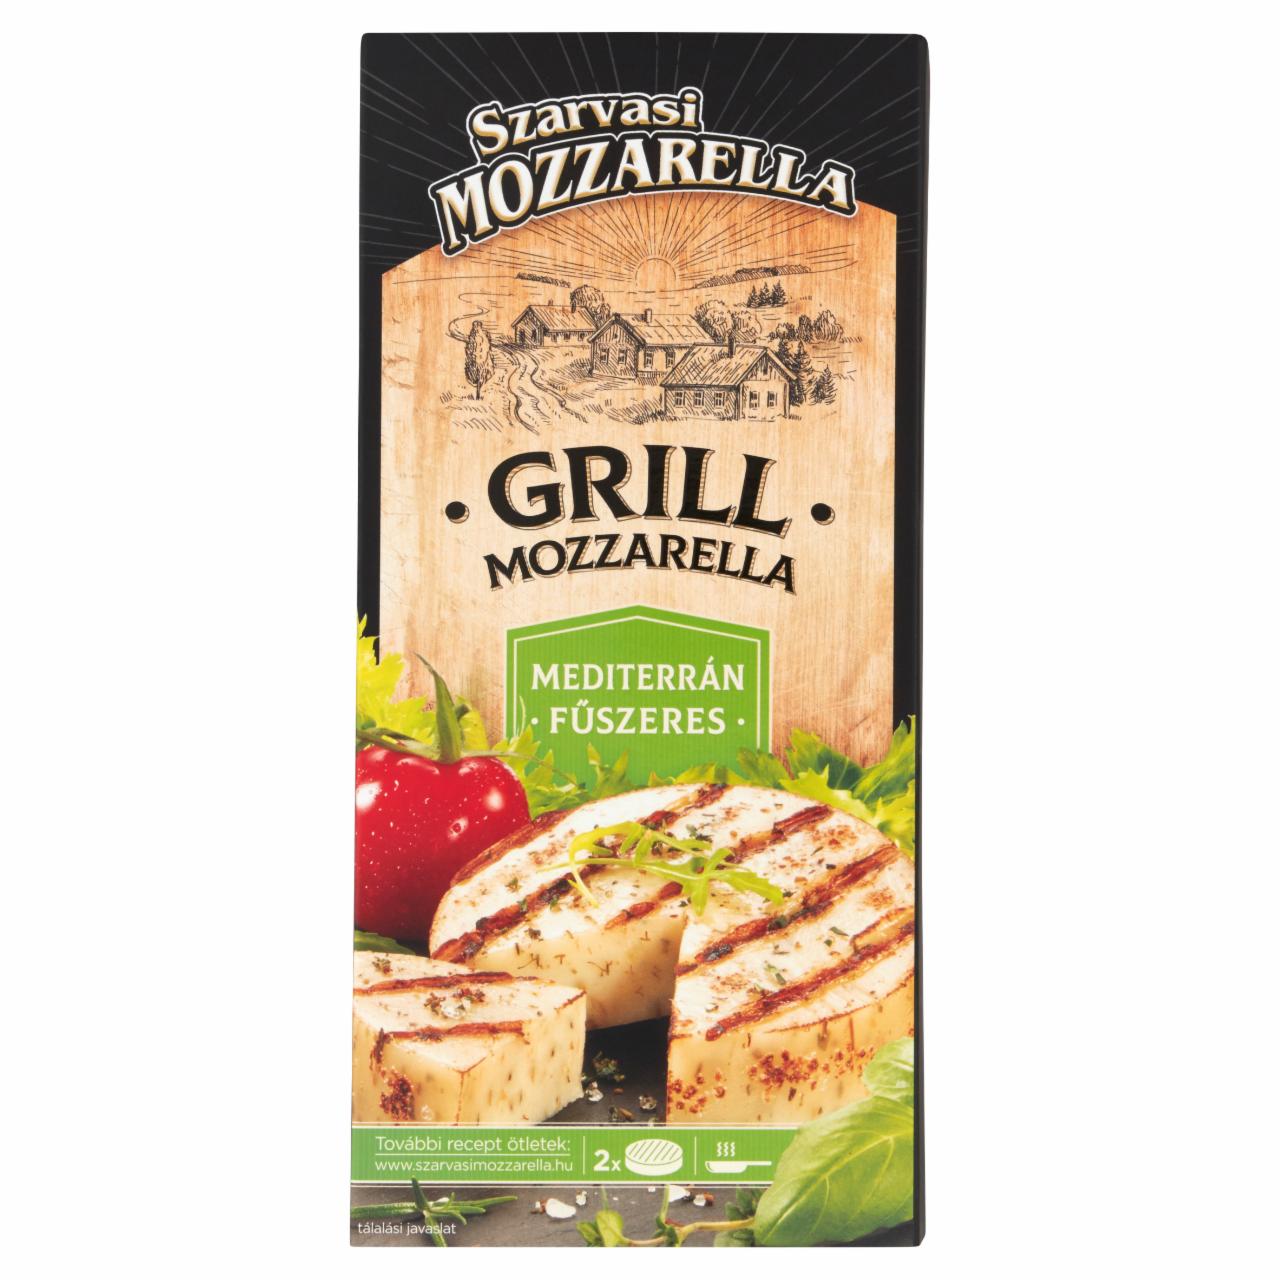 Képek - Szarvasi Mozzarella mediterrán fűszeres grill mozzarella 2 x 75 g (150 g)